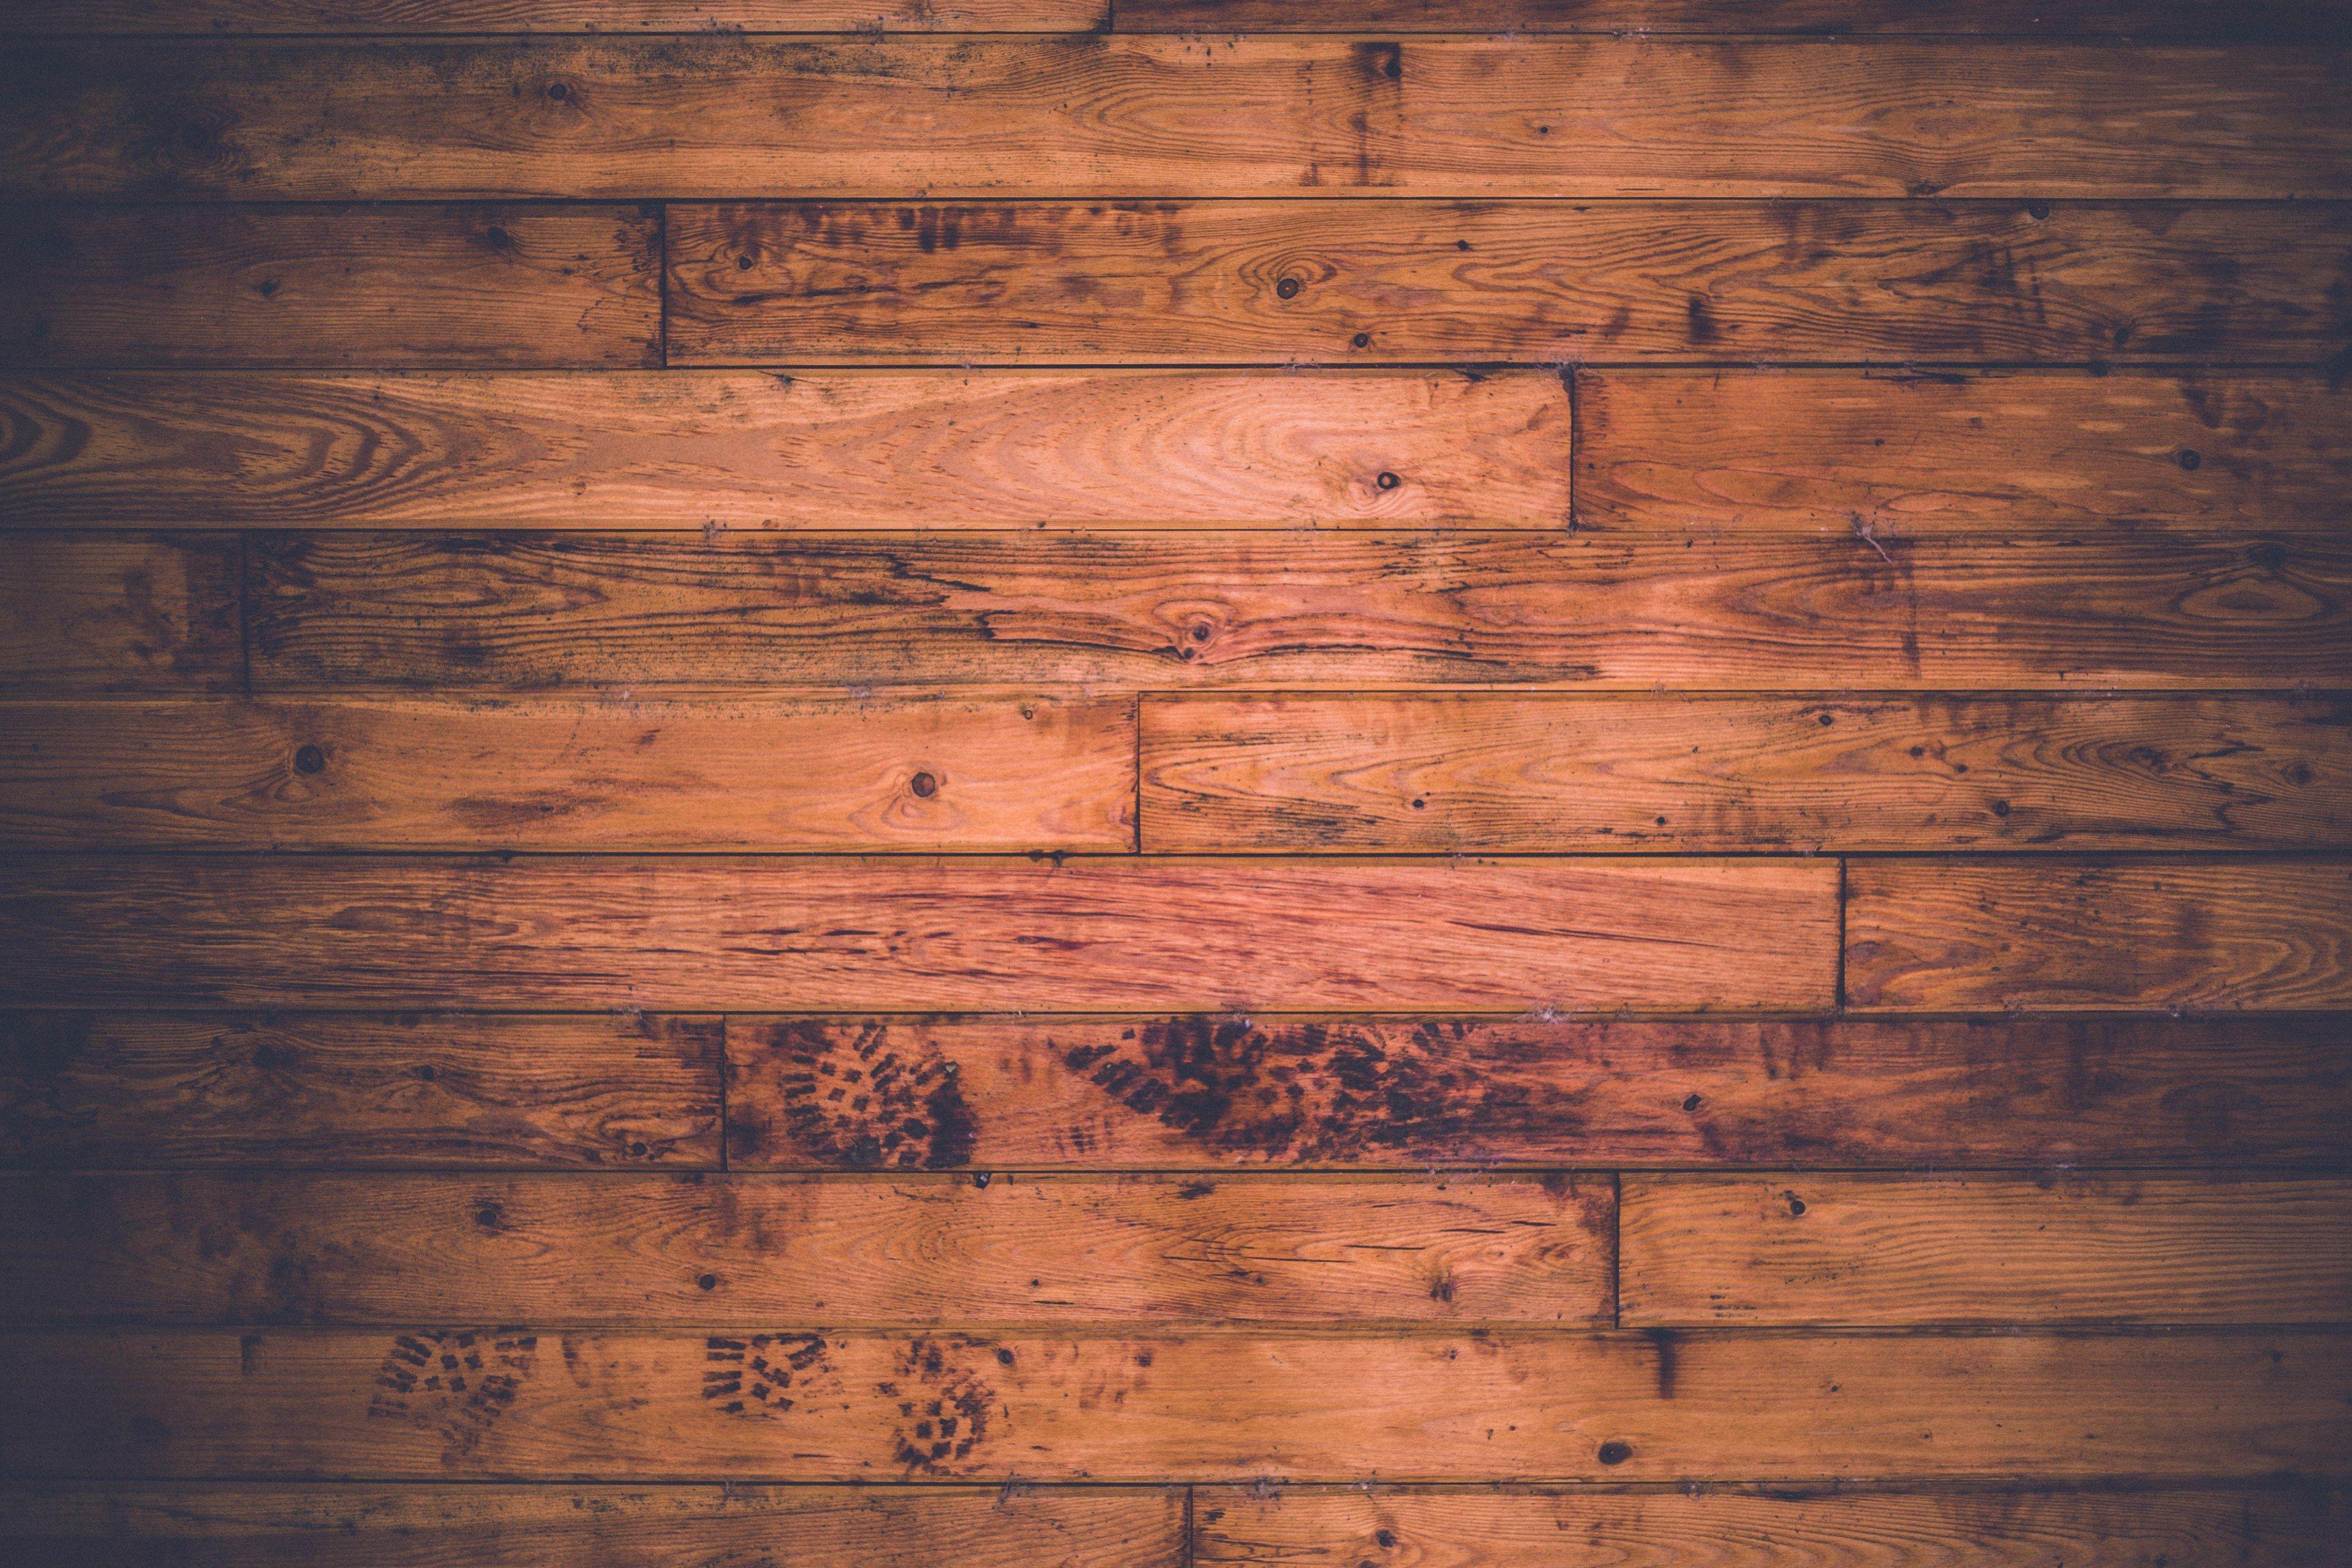 Hình nền gỗ 4K đem lại một trải nghiệm tuyệt vời với độ phân giải cao cùng với mẫu vân gỗ độc đáo và sắc nét. Xem hình ảnh liên quan đến Wood 4K Wallpapers để tận hưởng vẻ đẹp hiện đại và độc đáo của những mẫu hình nền này.